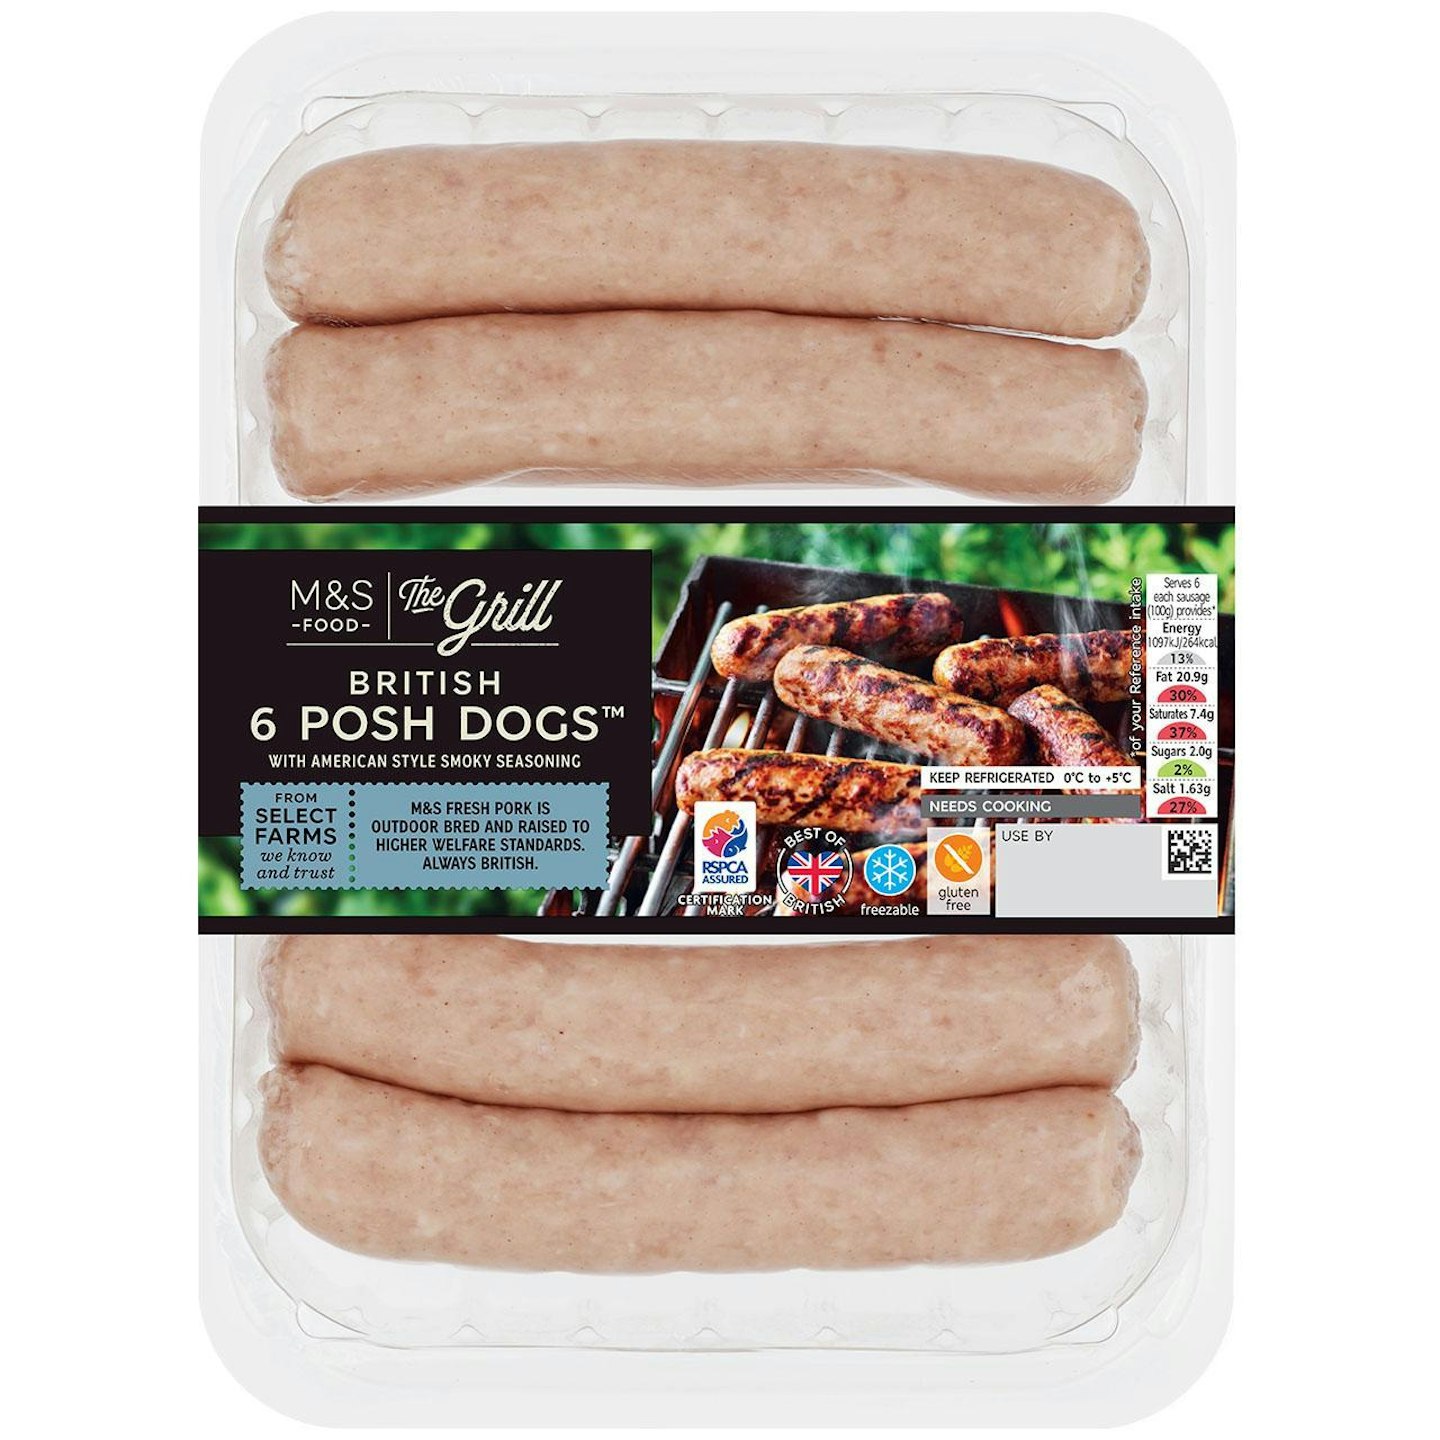 M&S 6 Posh Dog Pork Sausages with Smoky Seasoning